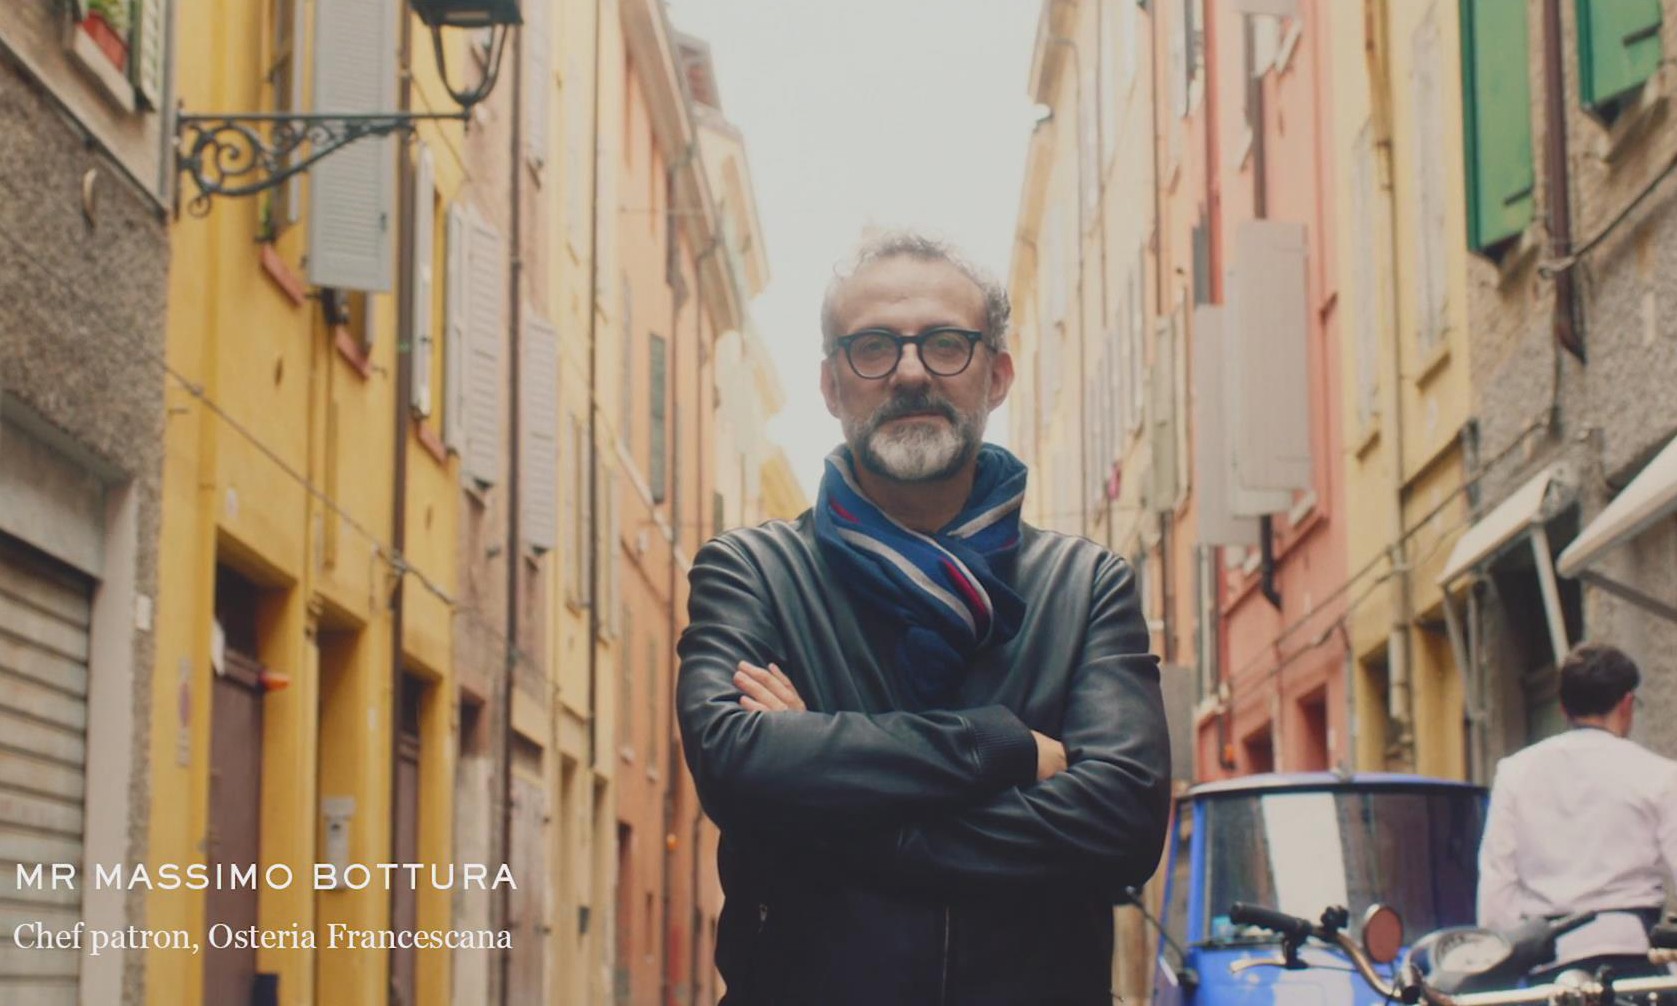 跟随主厨 Massimo Bottura 的脚步，领略全球最佳餐厅 Osteria Francescana 的食尚艺术